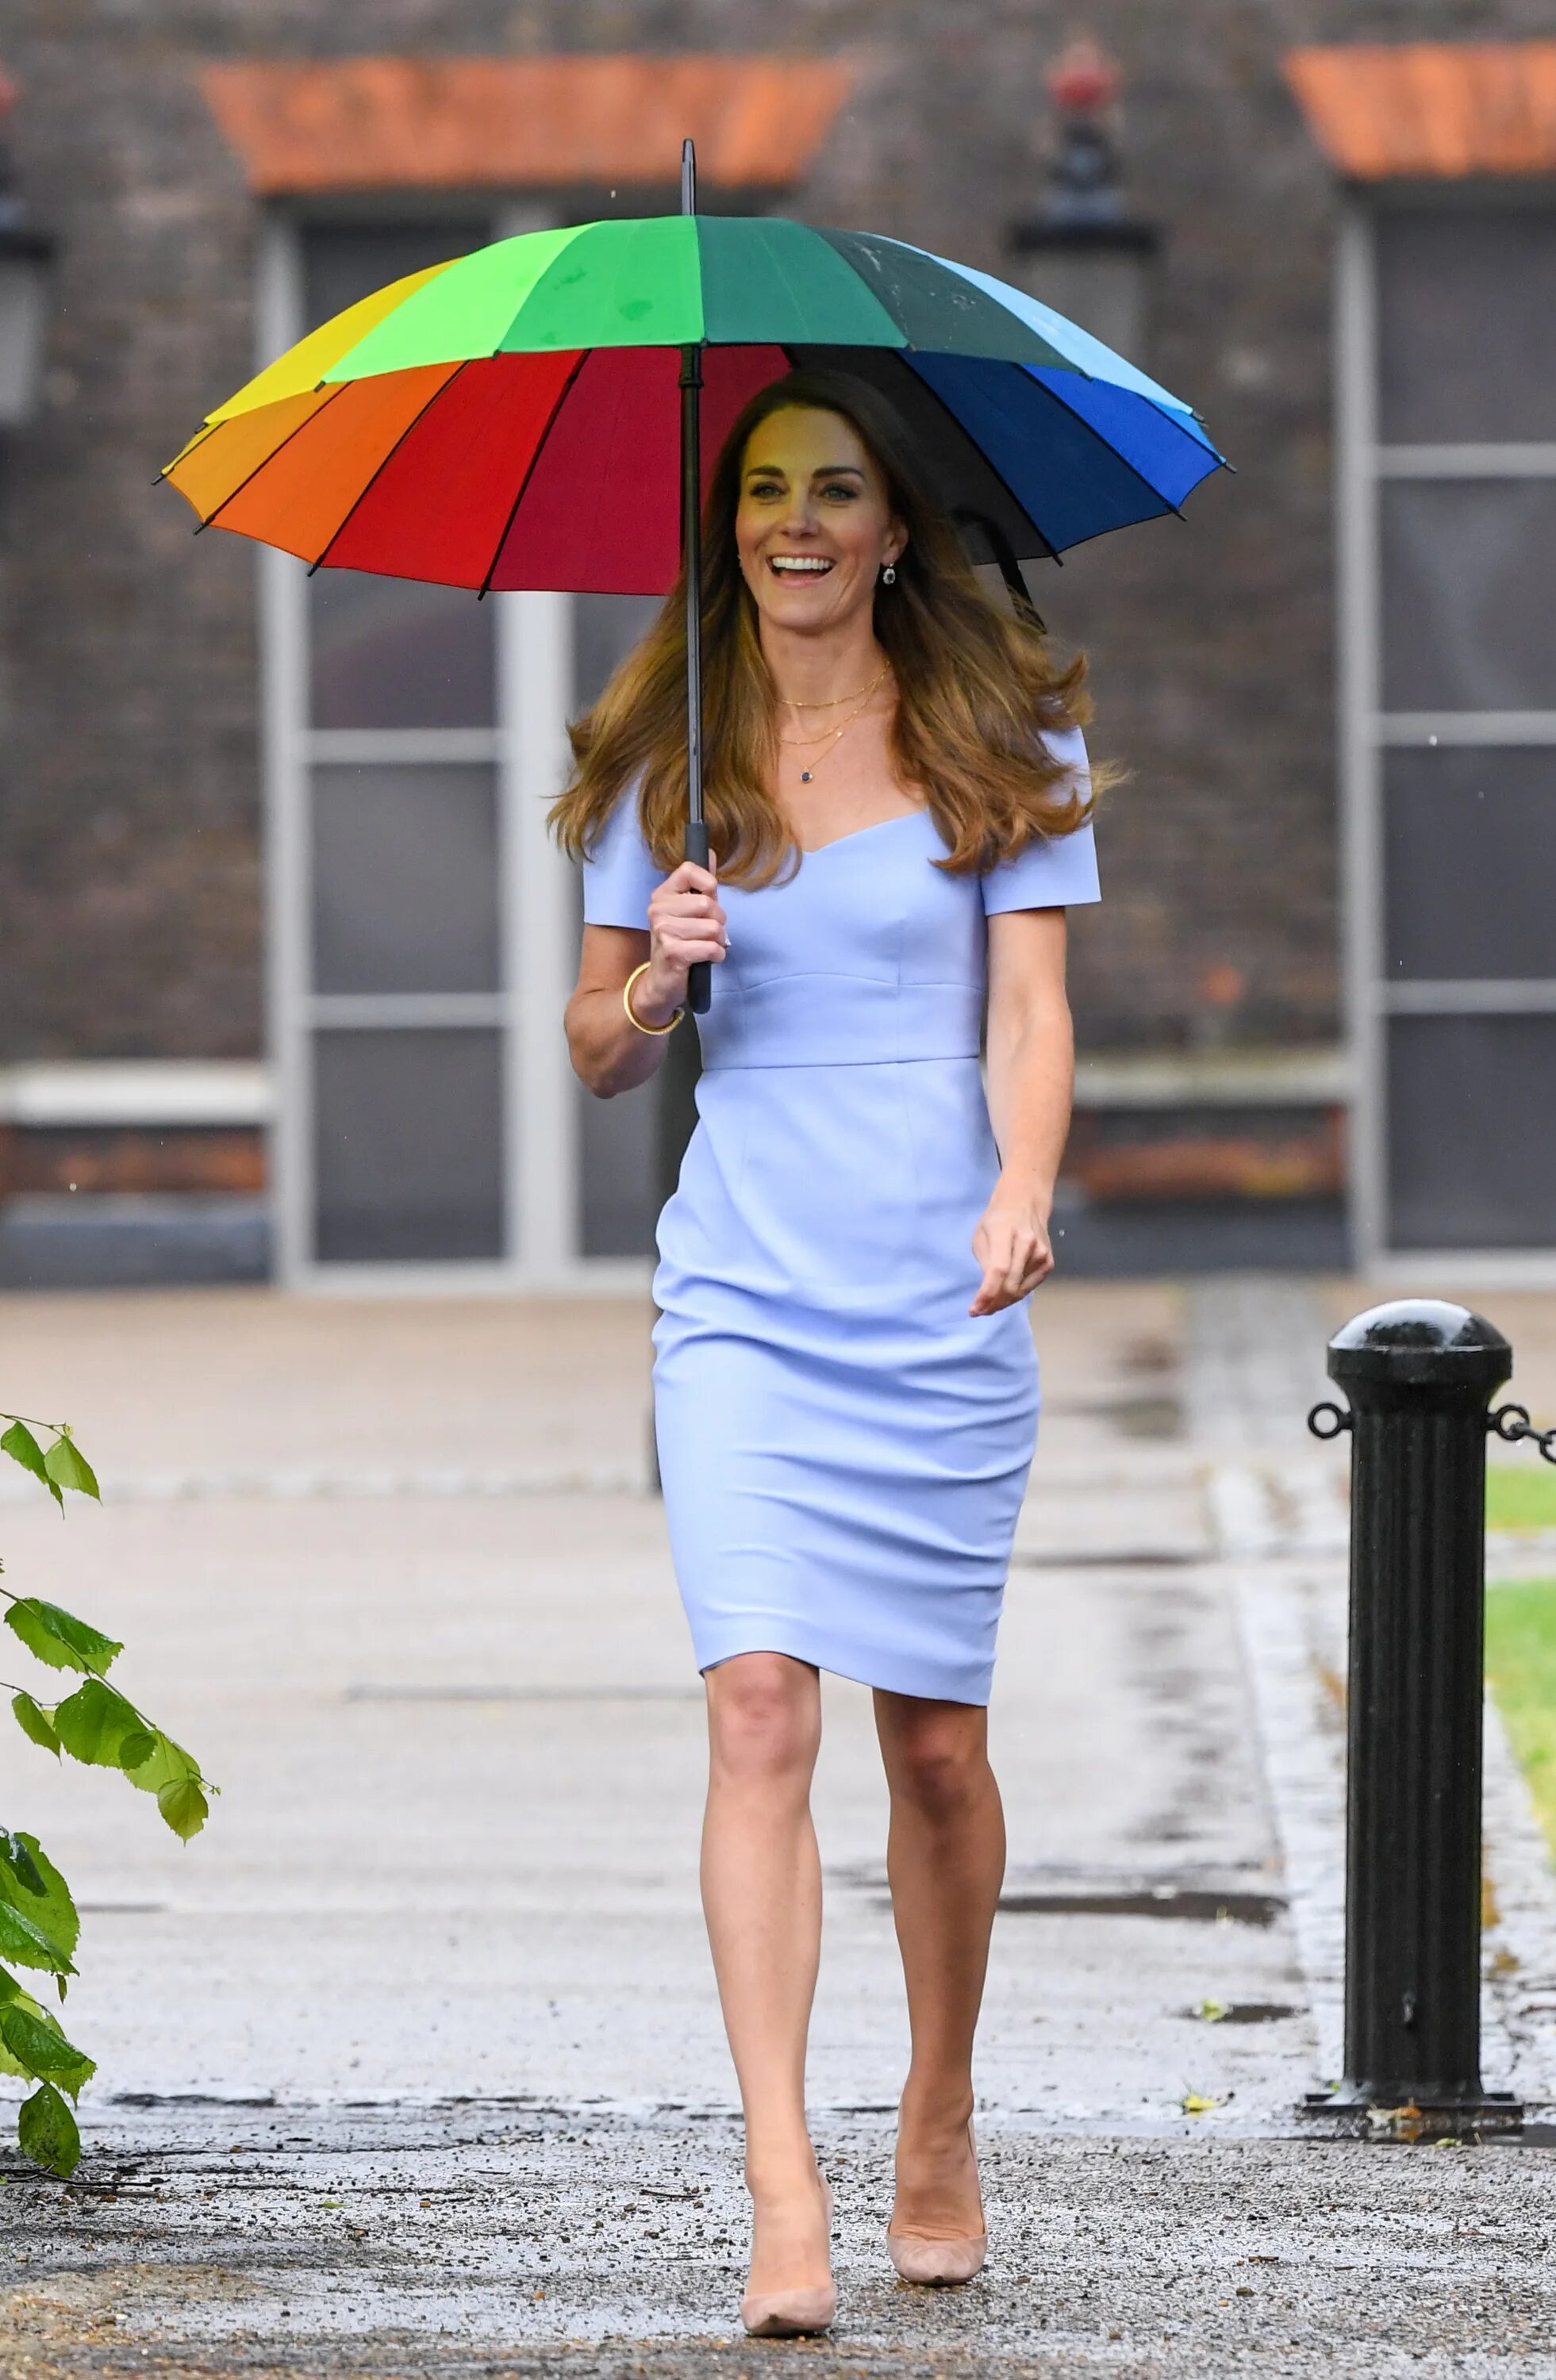 Umbrella dress. Кейт Миддлтон и Радужный зонт. Платье зонт. Желтое платье и зонт. Платье зонт жилищного цвета.